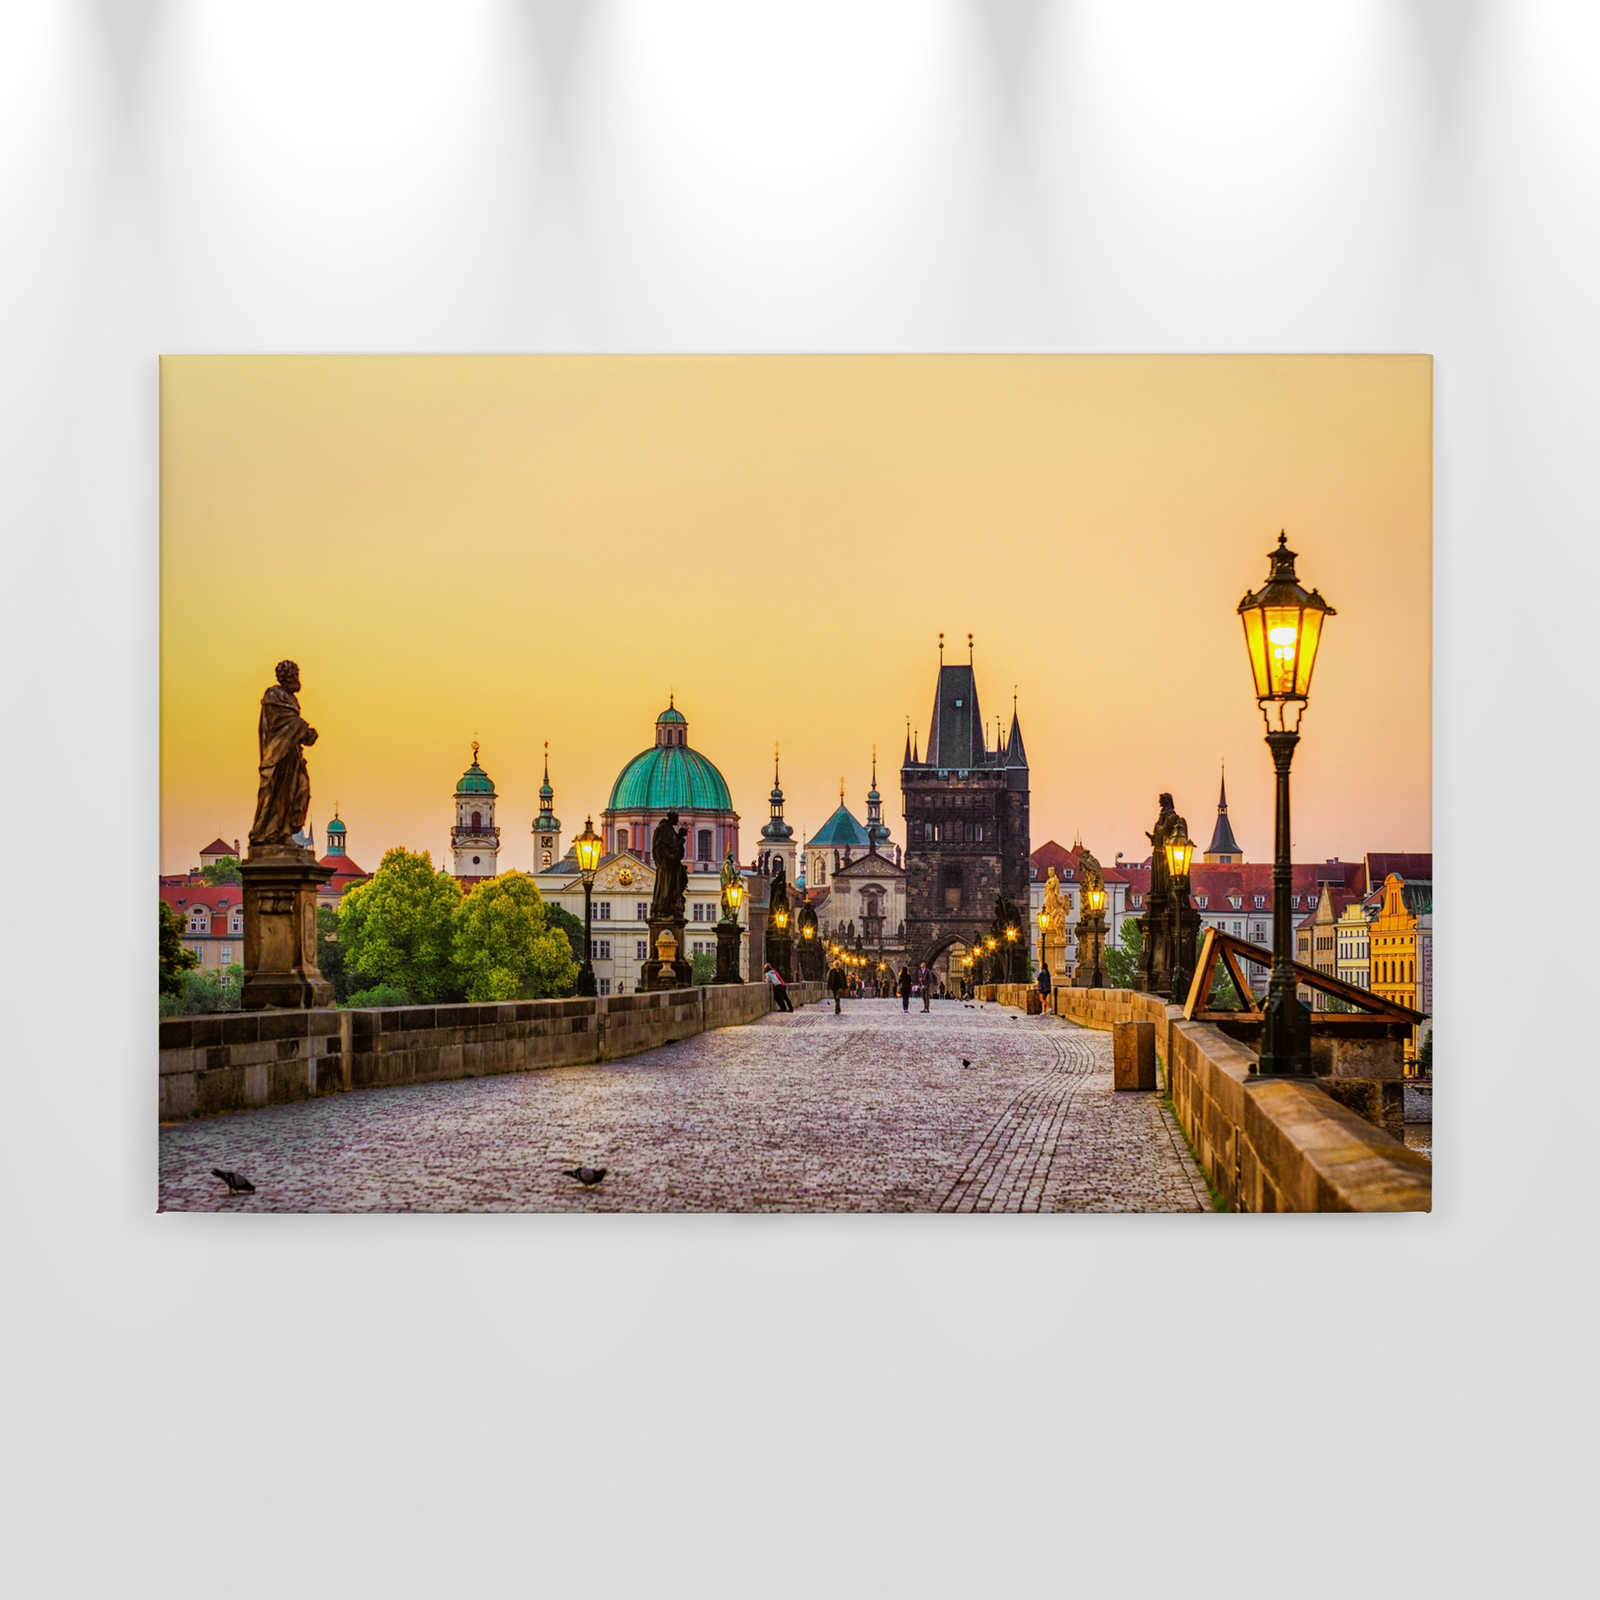             Canvas Charles Bridge Prague - 0.90 m x 0.60 m
        